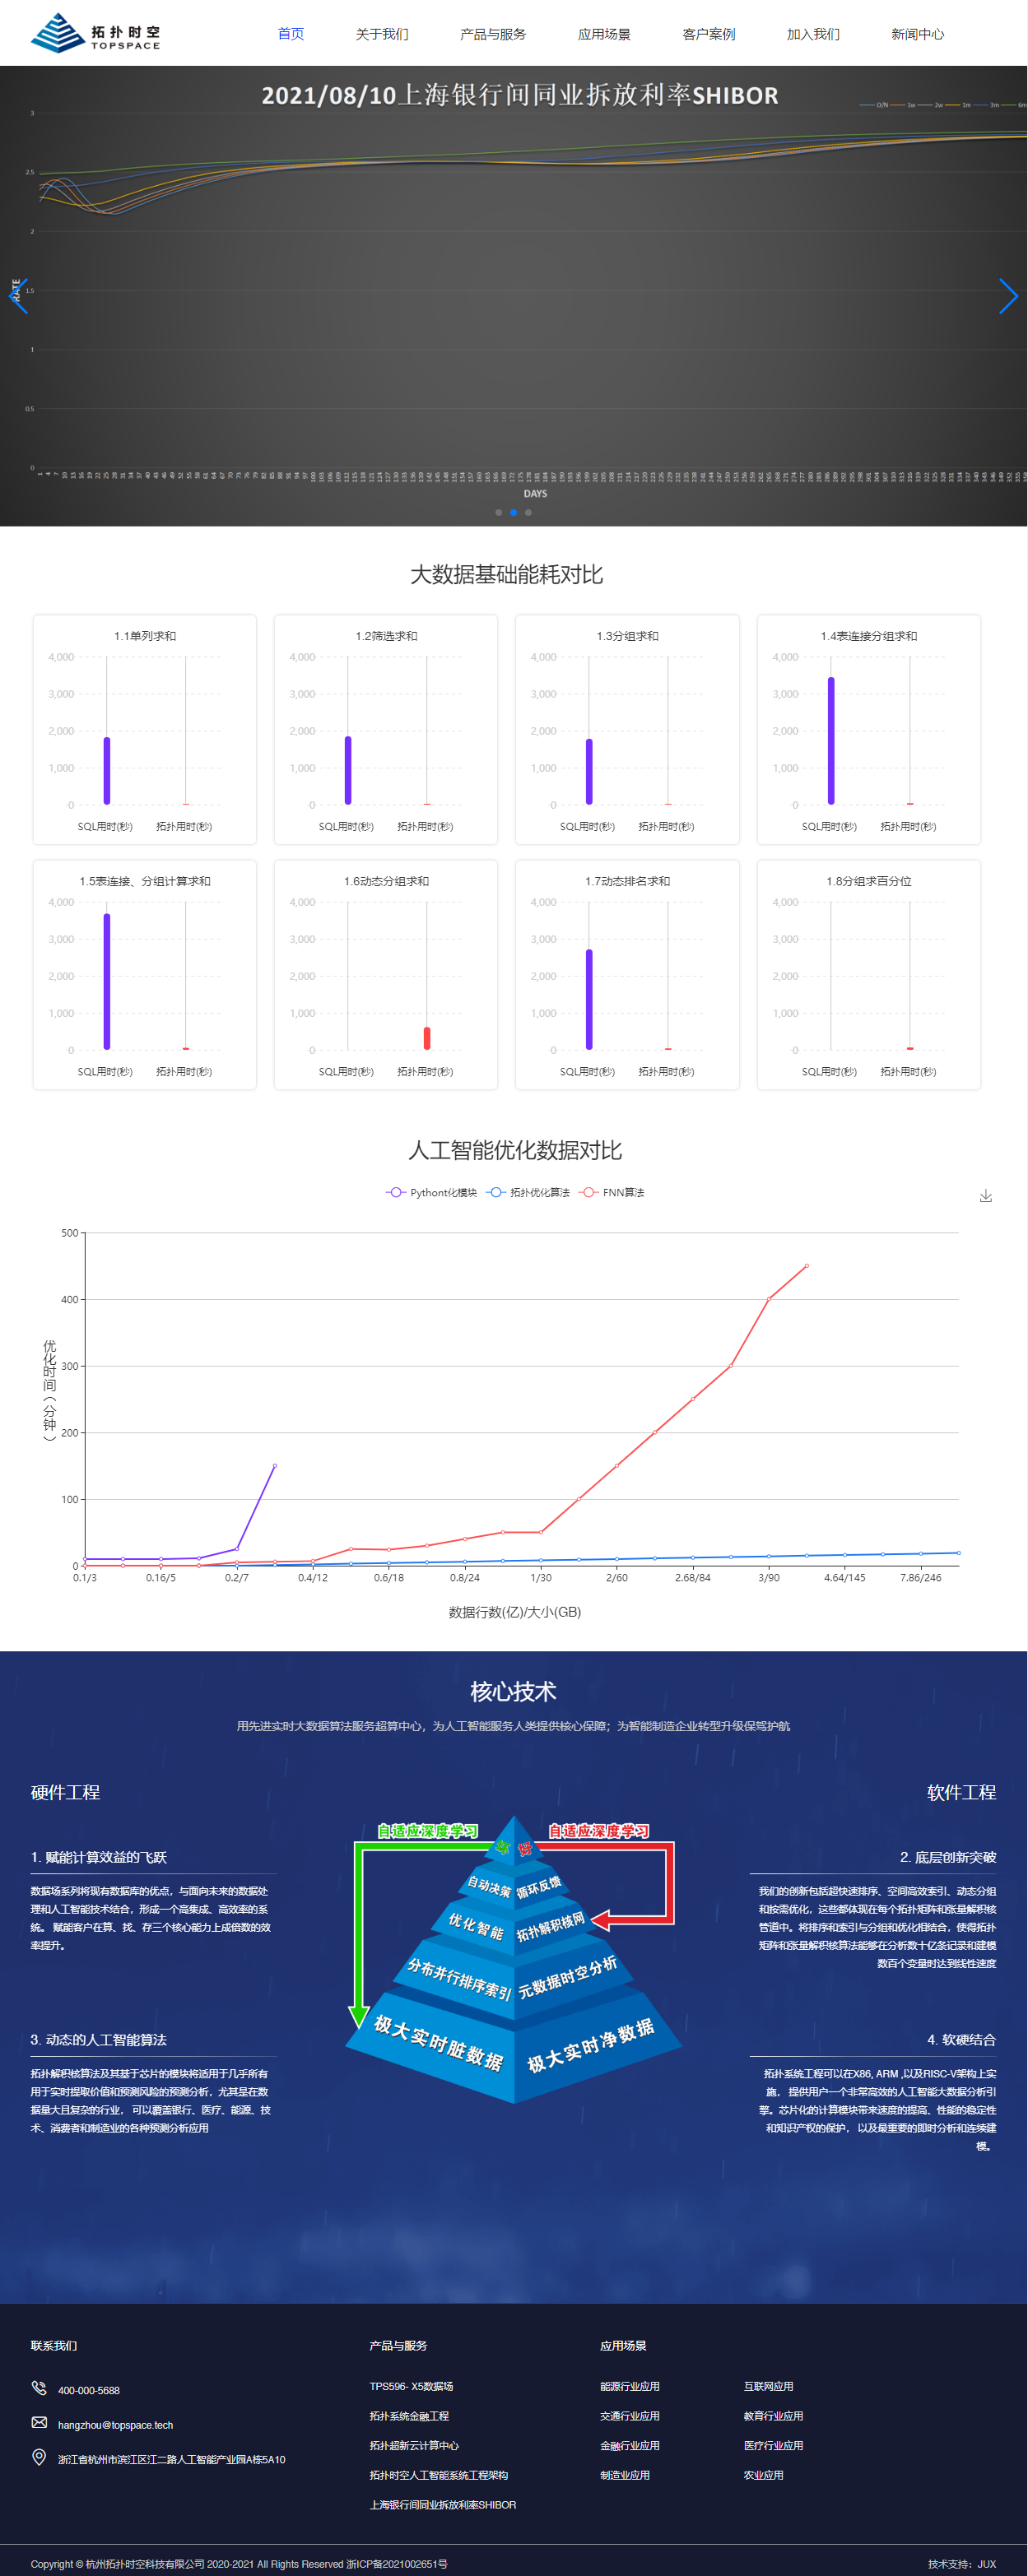 杭州拓扑时空科技有限公司网站效果图